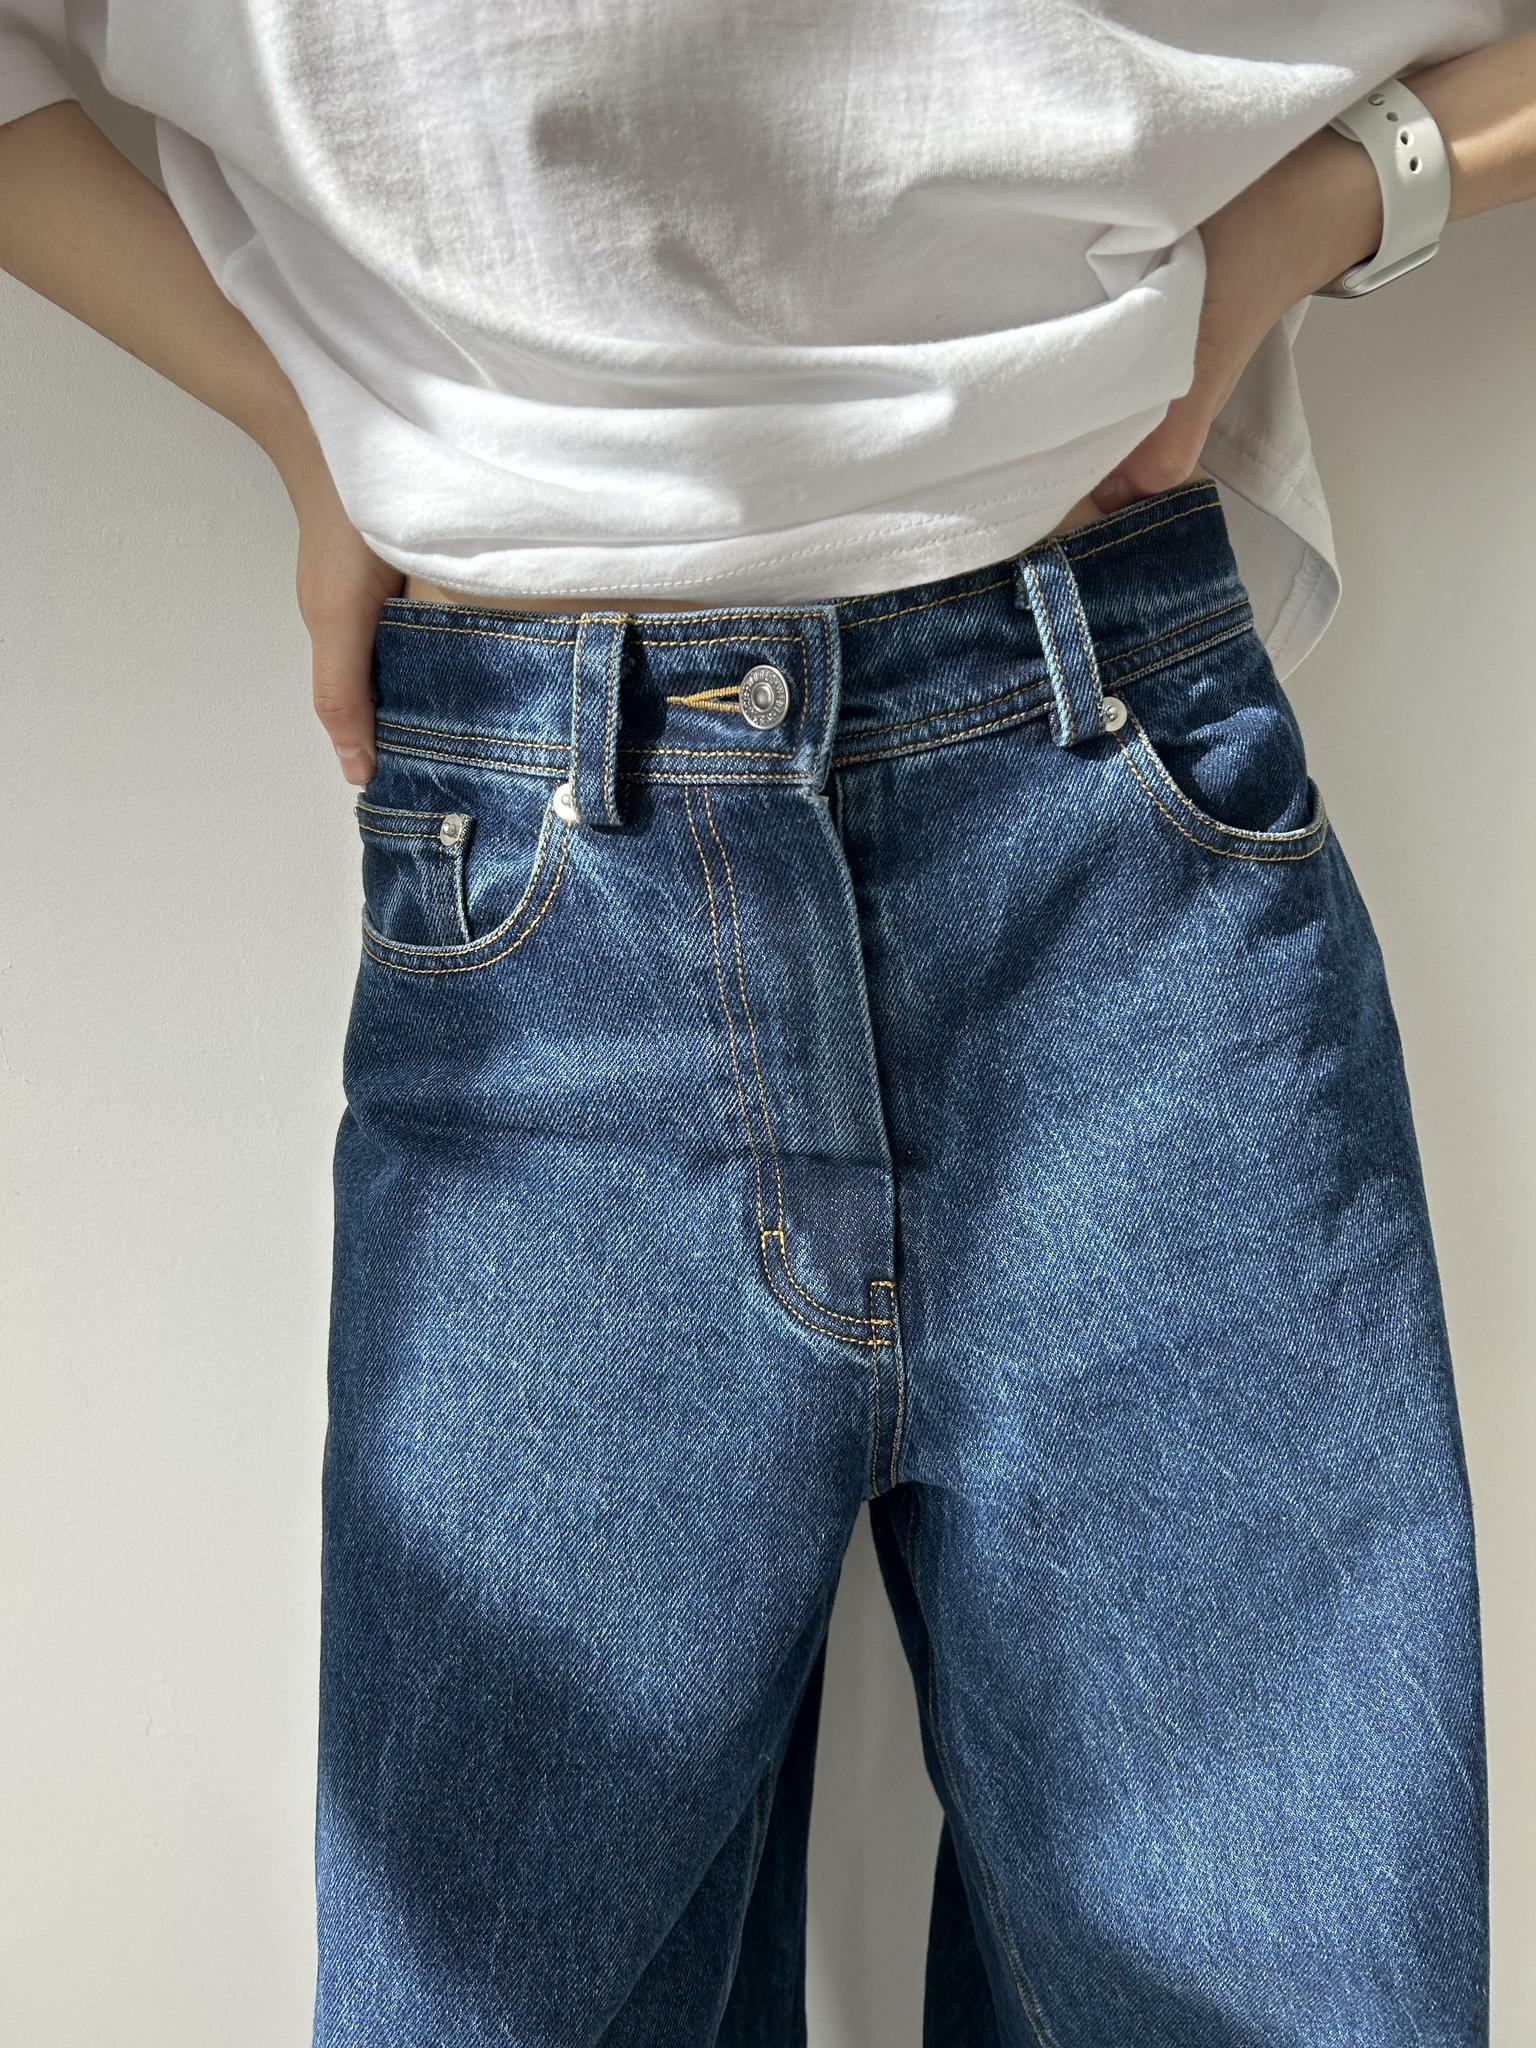 Брюки, джинсы \u003e Джинсы широкие купить в интернет-магазине